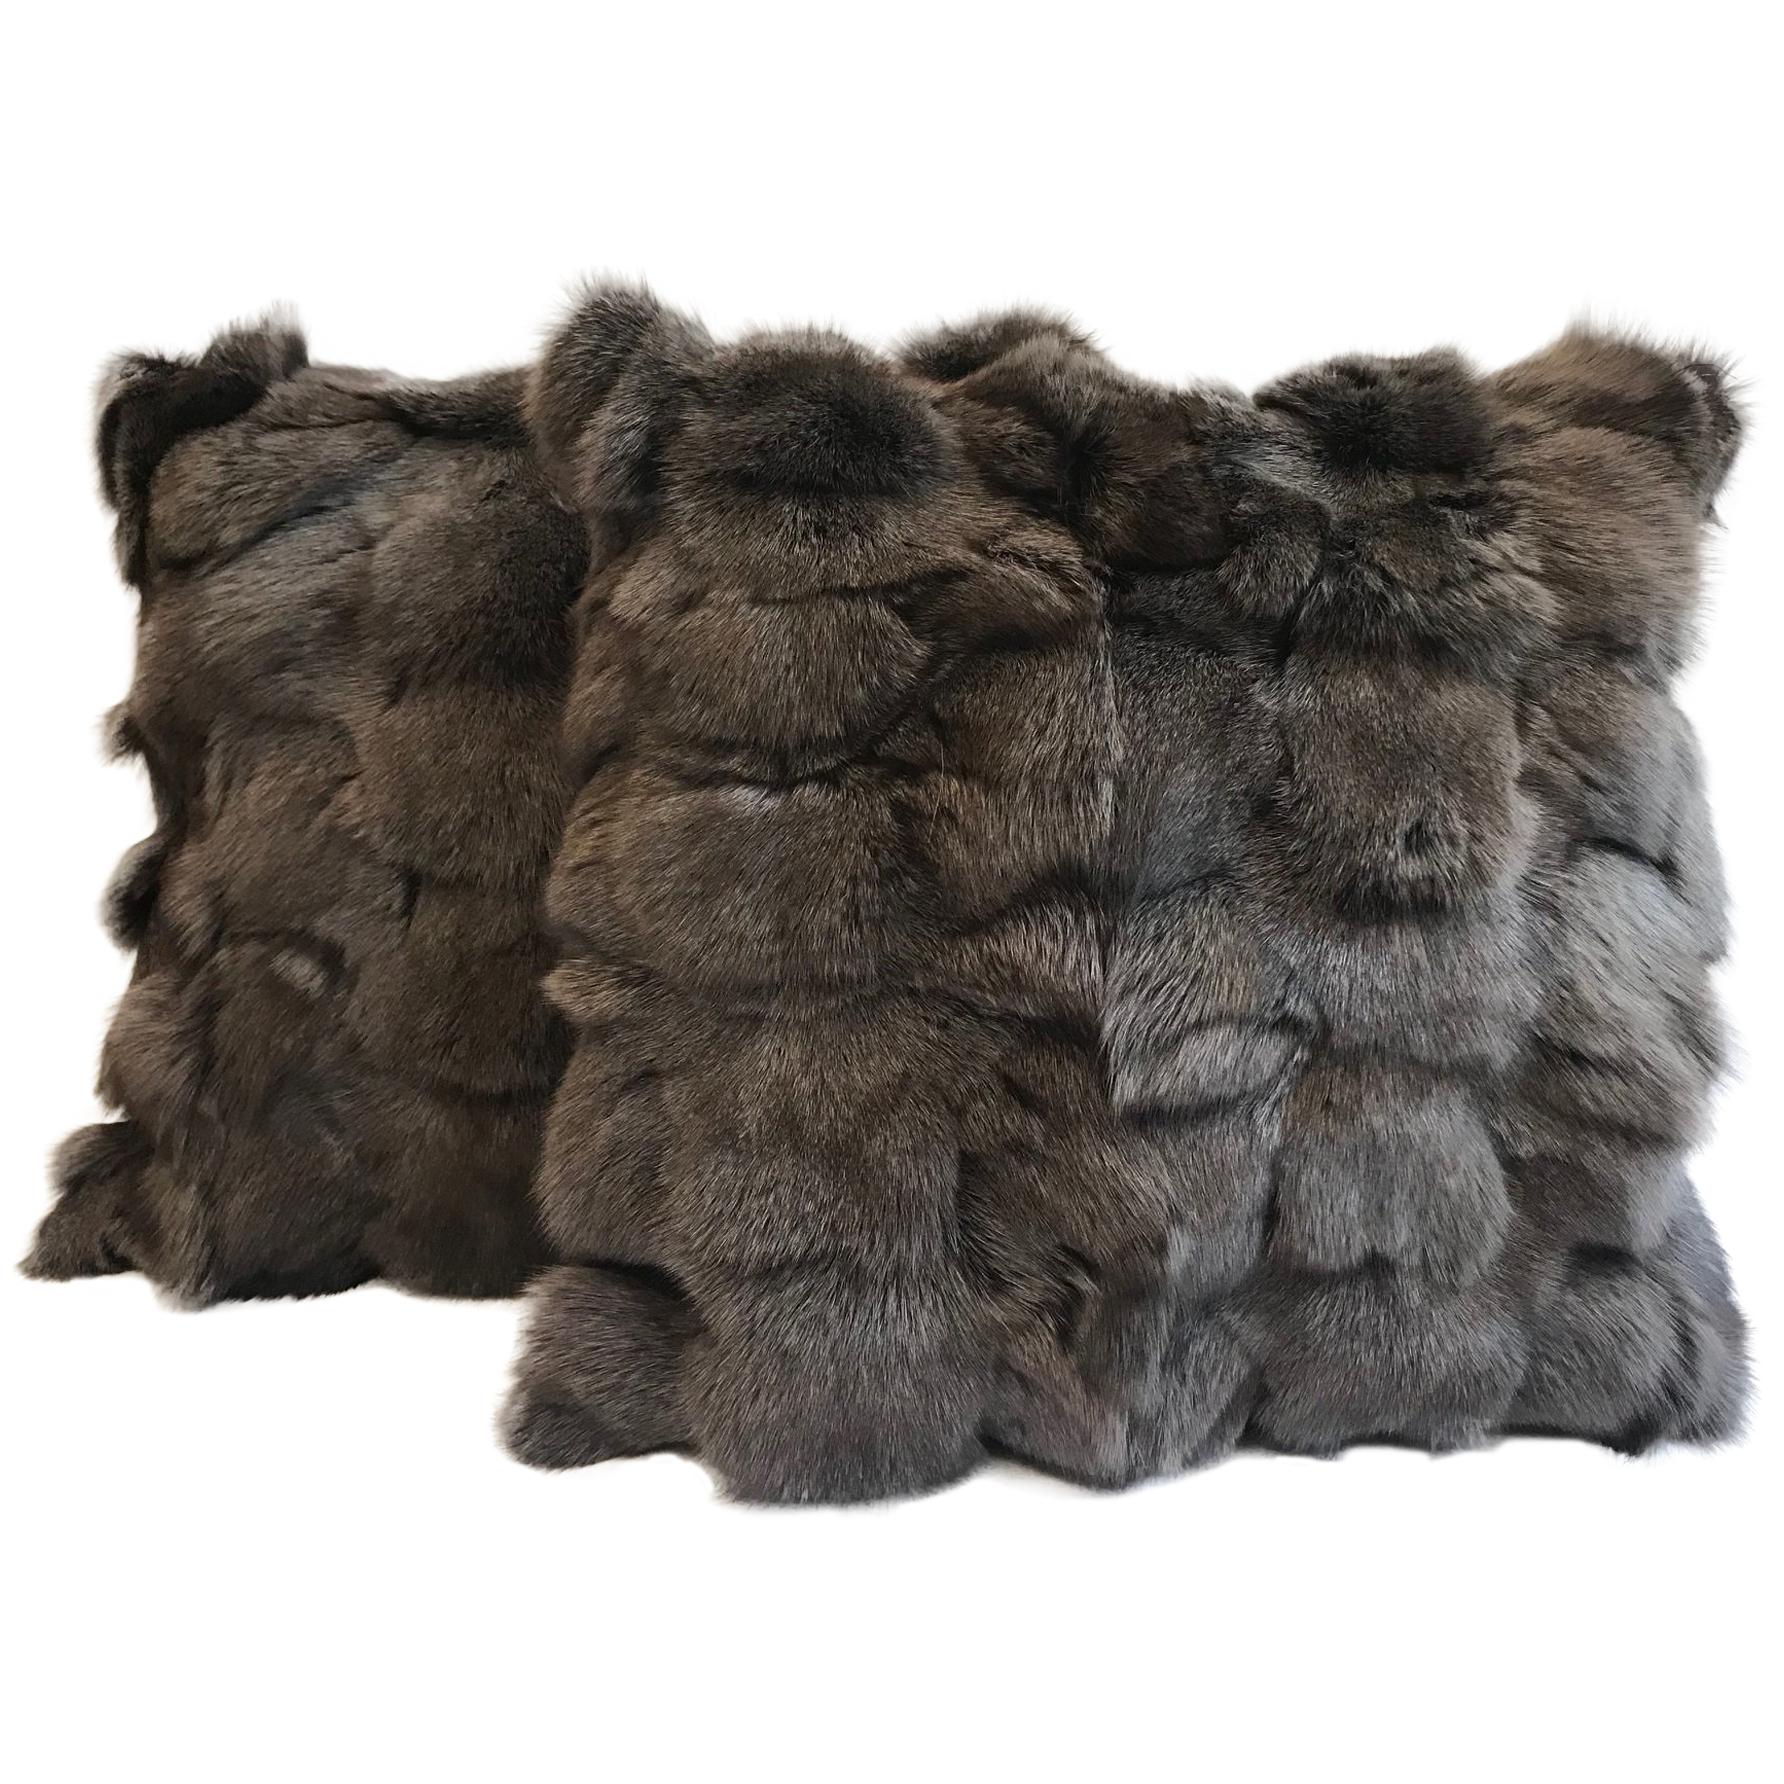 Pair of Brown Fox Fur Pillows